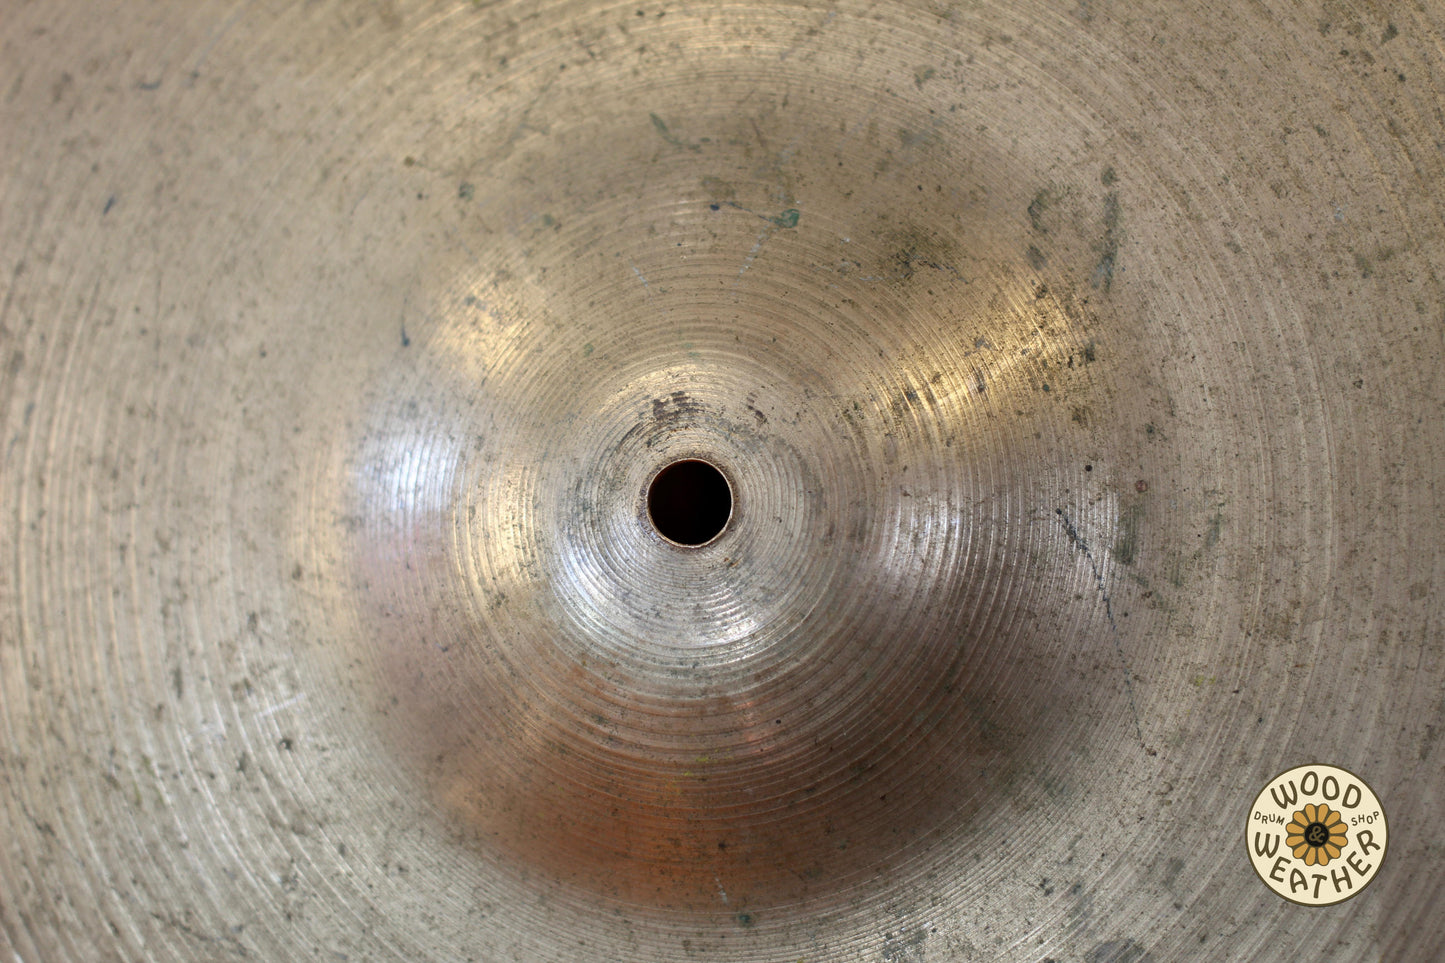 1960s A. Zildjian 20" Ride Cymbal 2970g